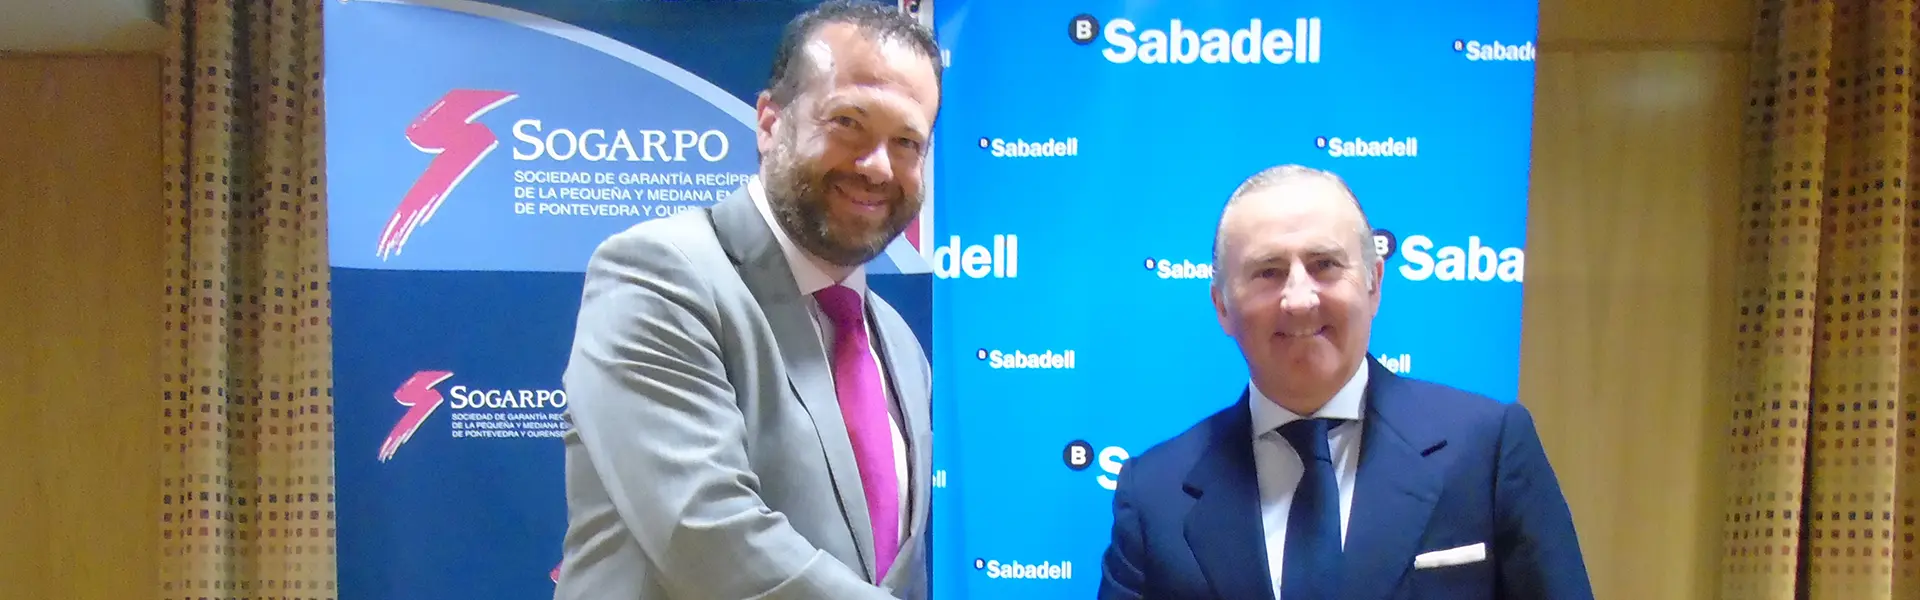 Sogarpo y Sabadell abren una línea de financiación de 15 millones ultimas noticias